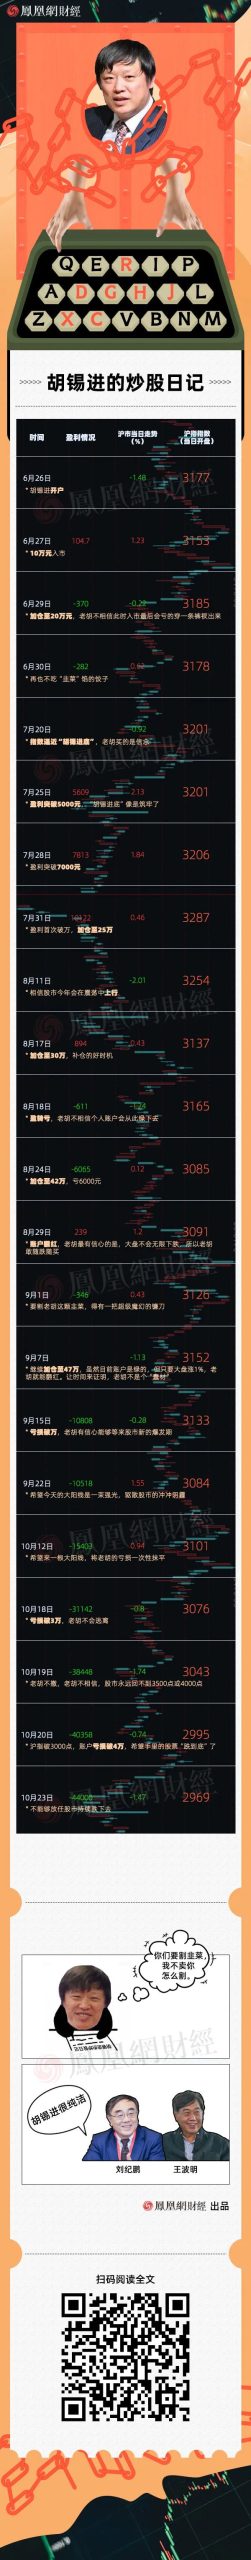 网红股民胡锡进炒股之路：一路加仓至48万，从盈利万元到亏超4万